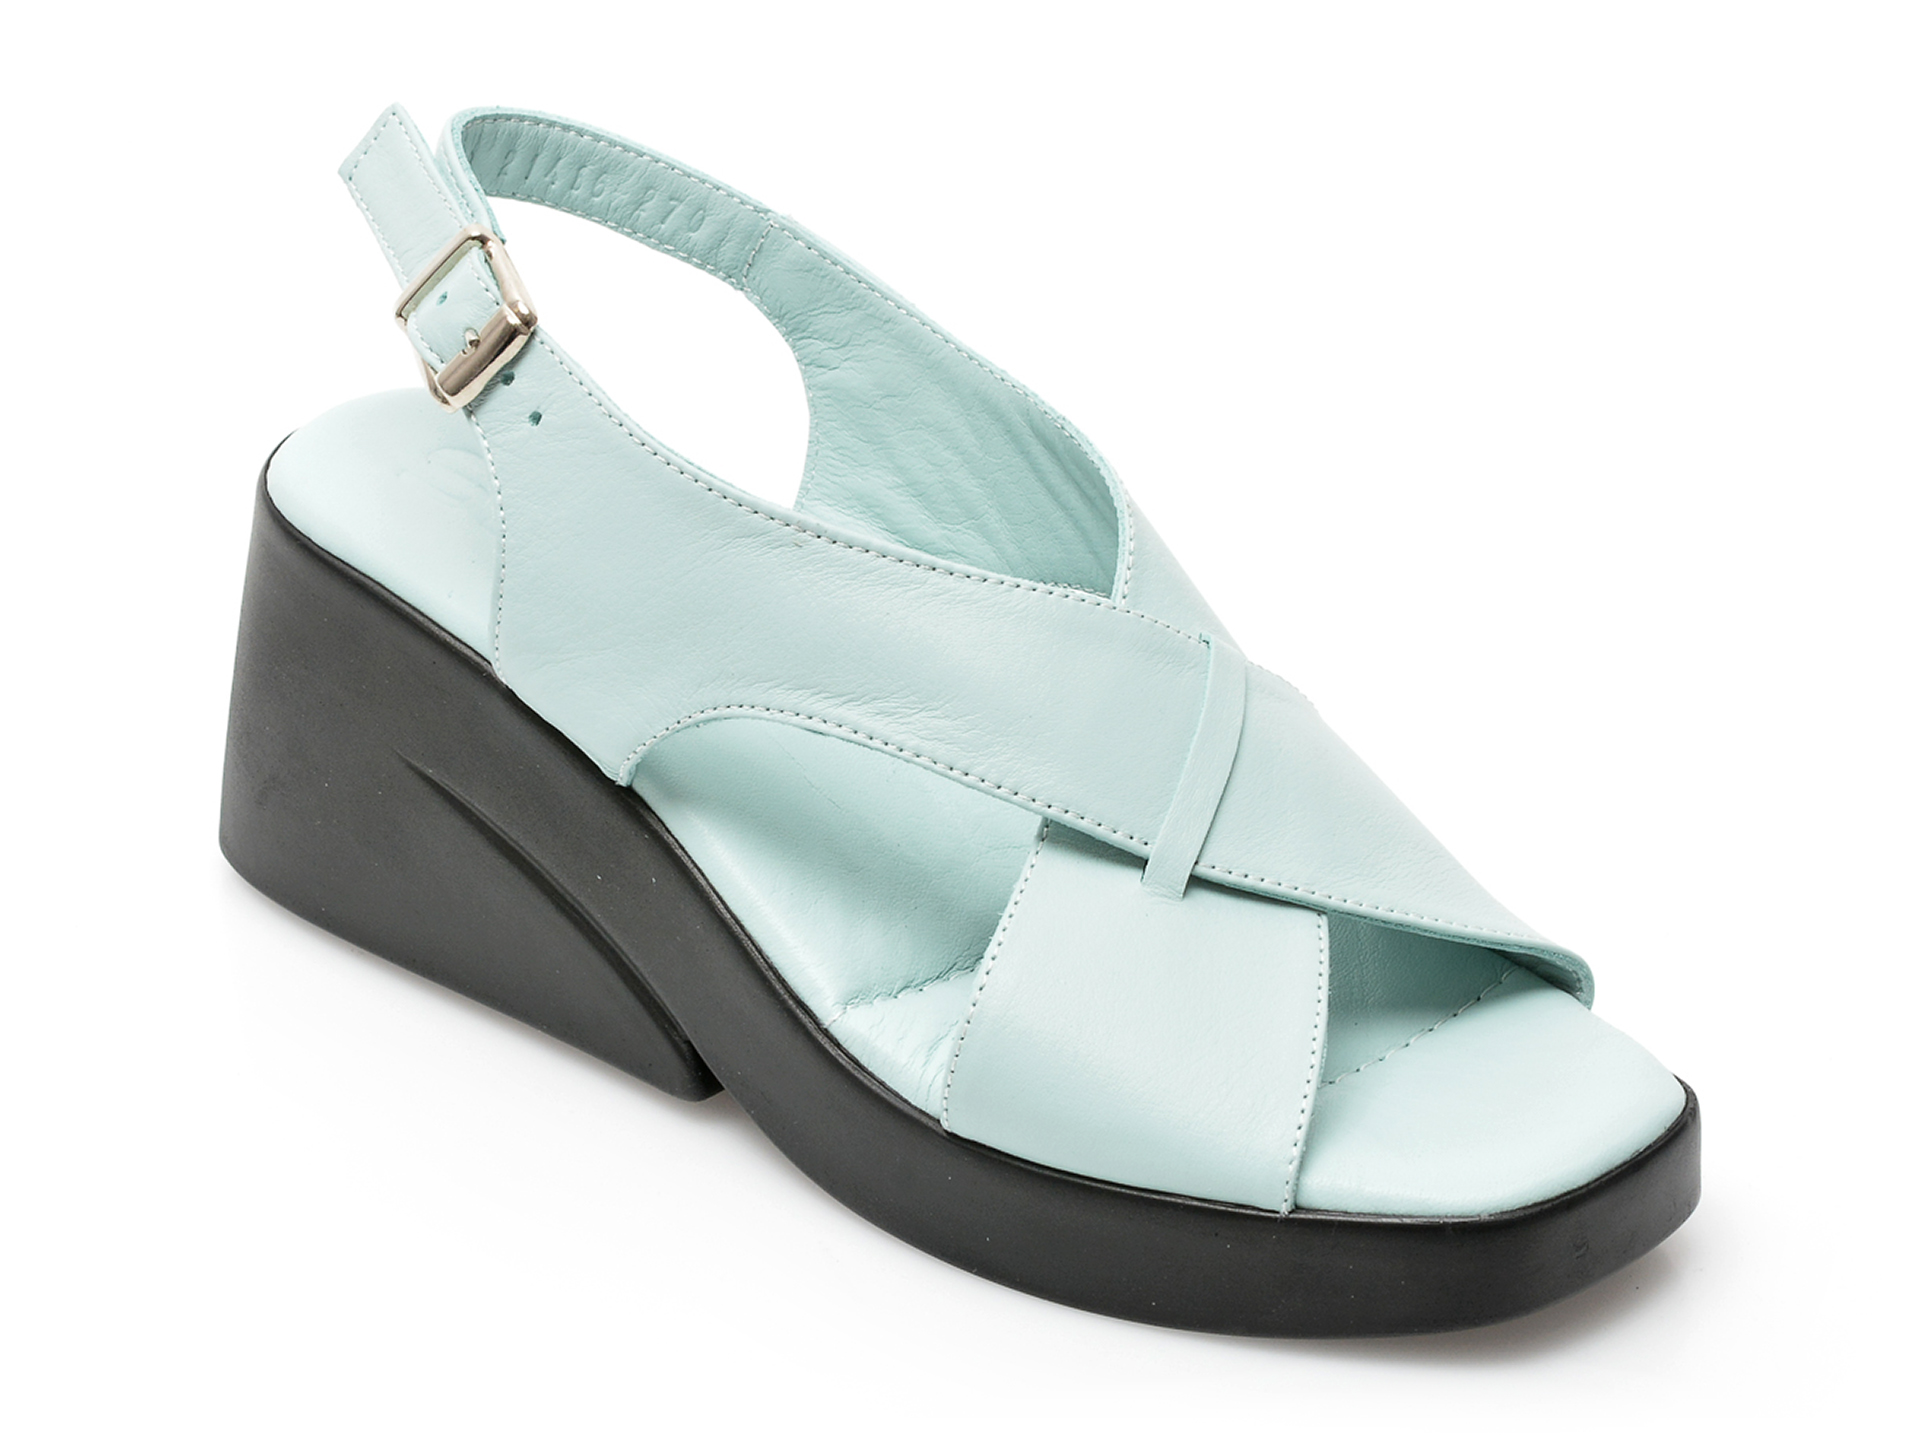 Sandale SM albastre, 2020, din piele naturala /femei/sandale INCALTAMINTE